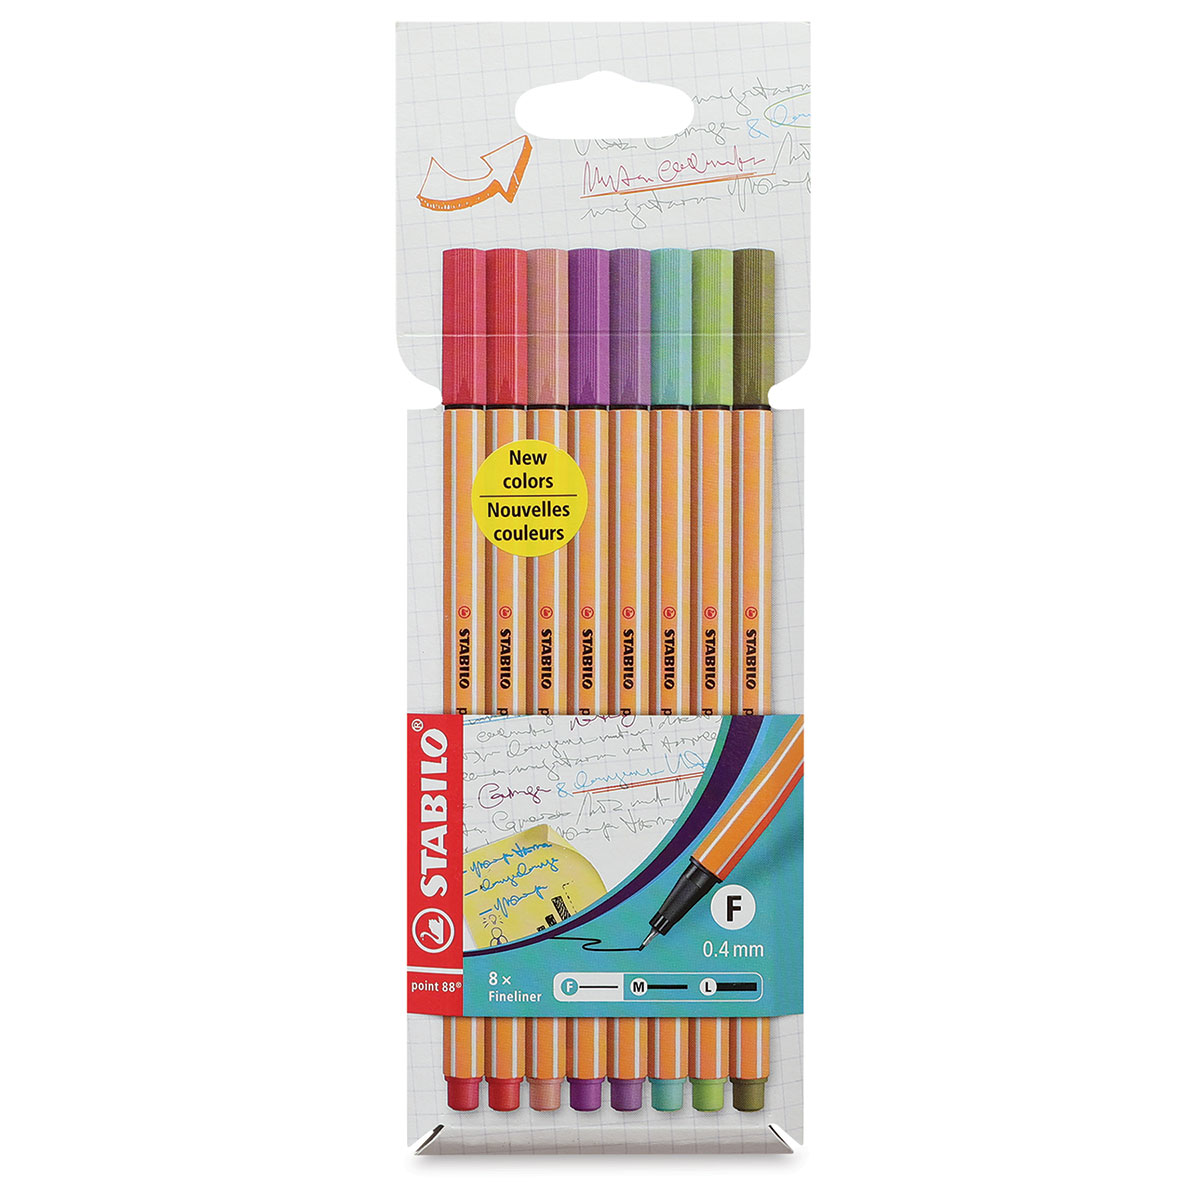 drie Ongehoorzaamheid gebonden Stabilo Point 88 Fineliner Pens and Sets | BLICK Art Materials